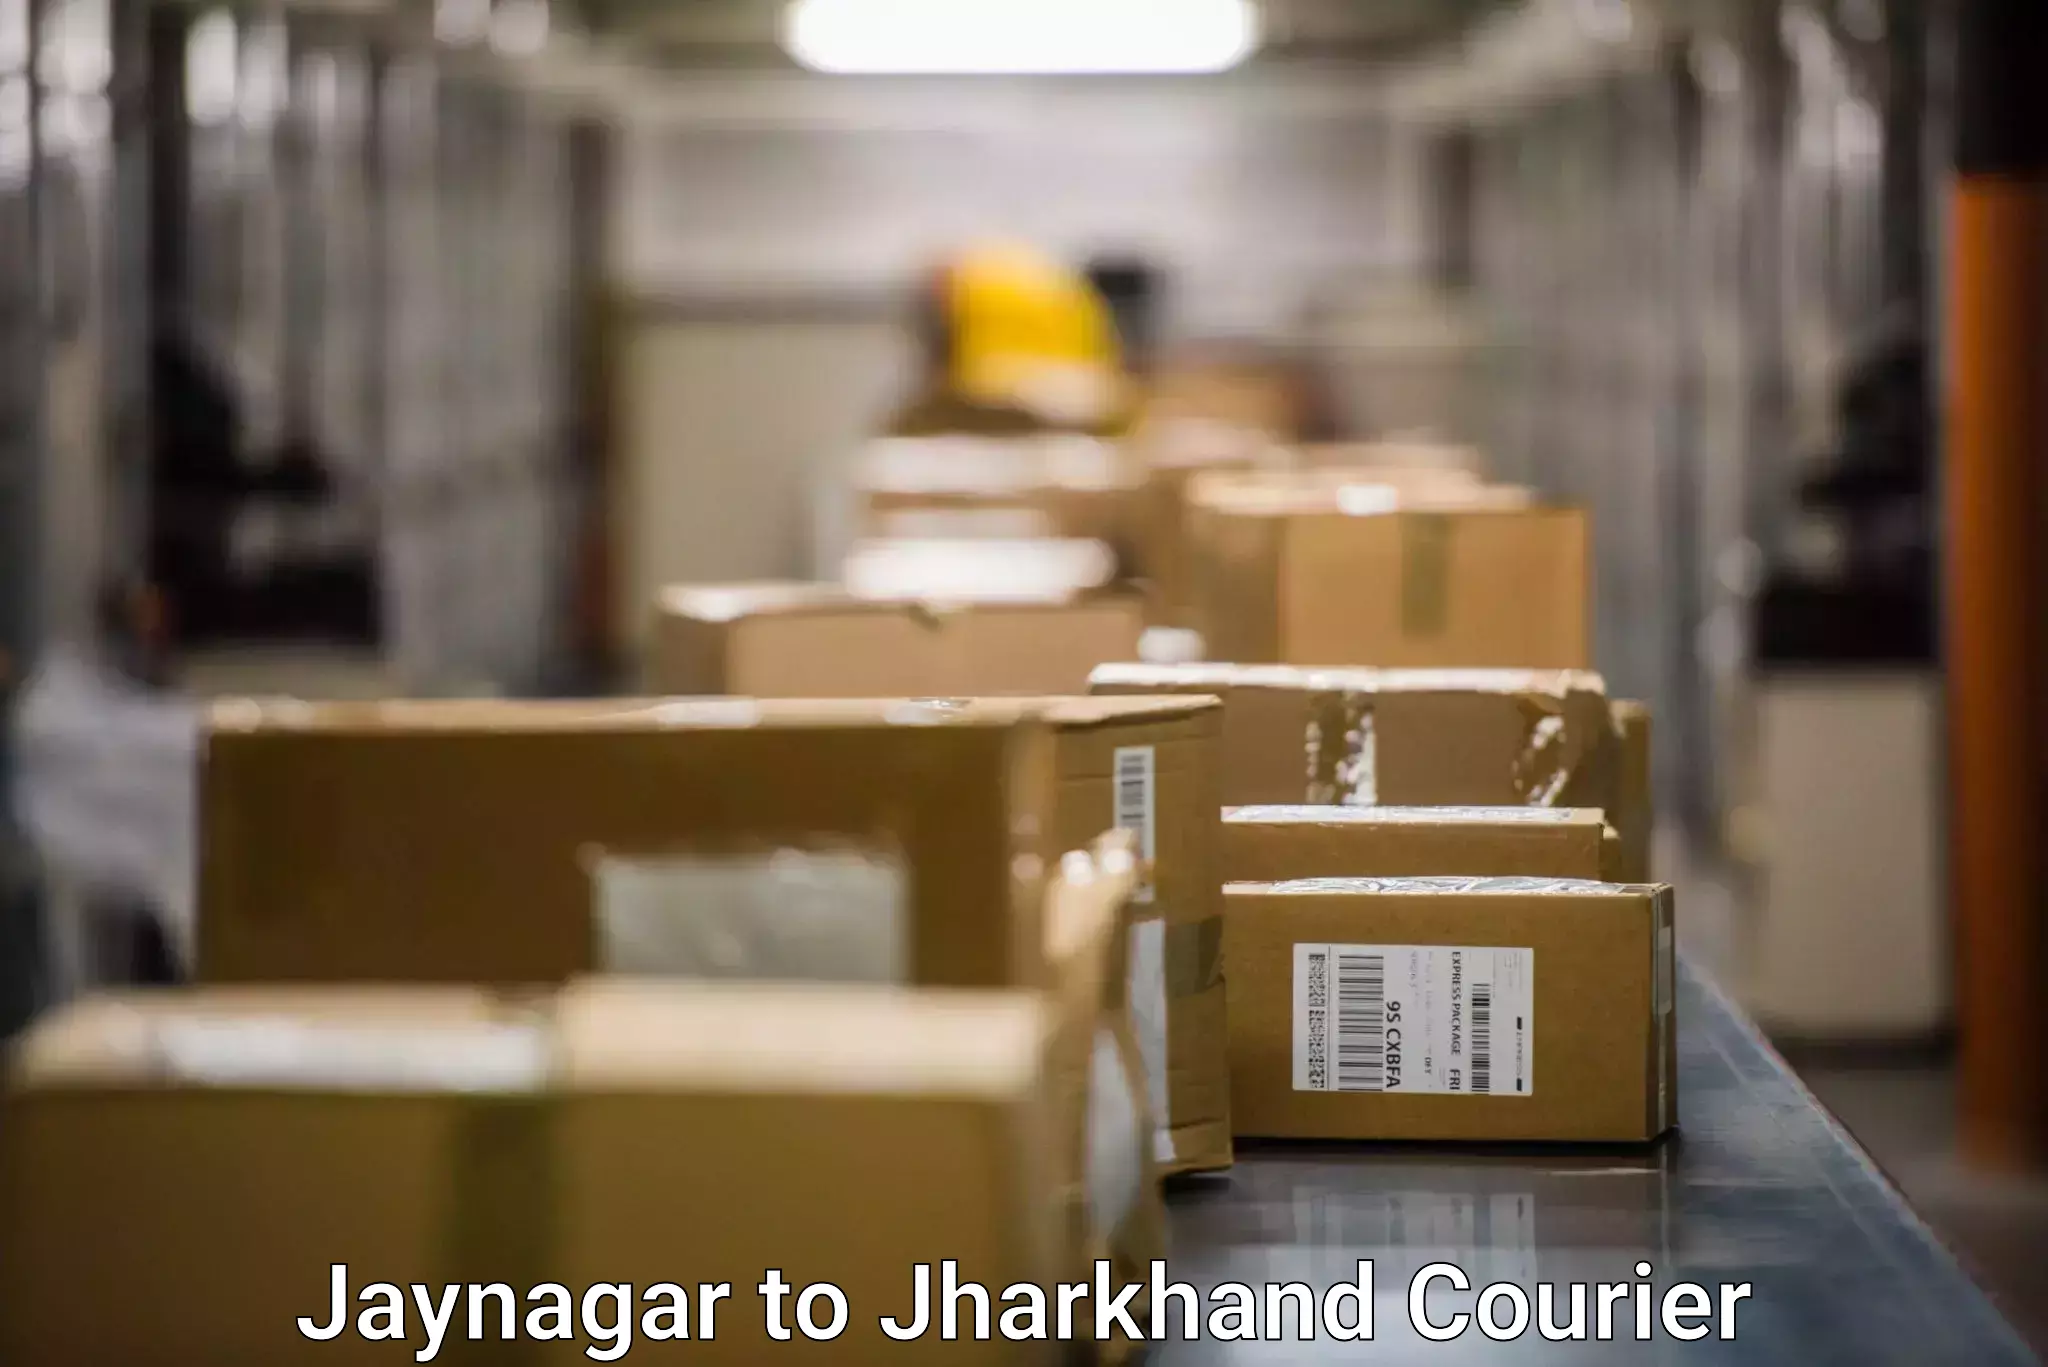 User-friendly delivery service Jaynagar to Bara Boarijor